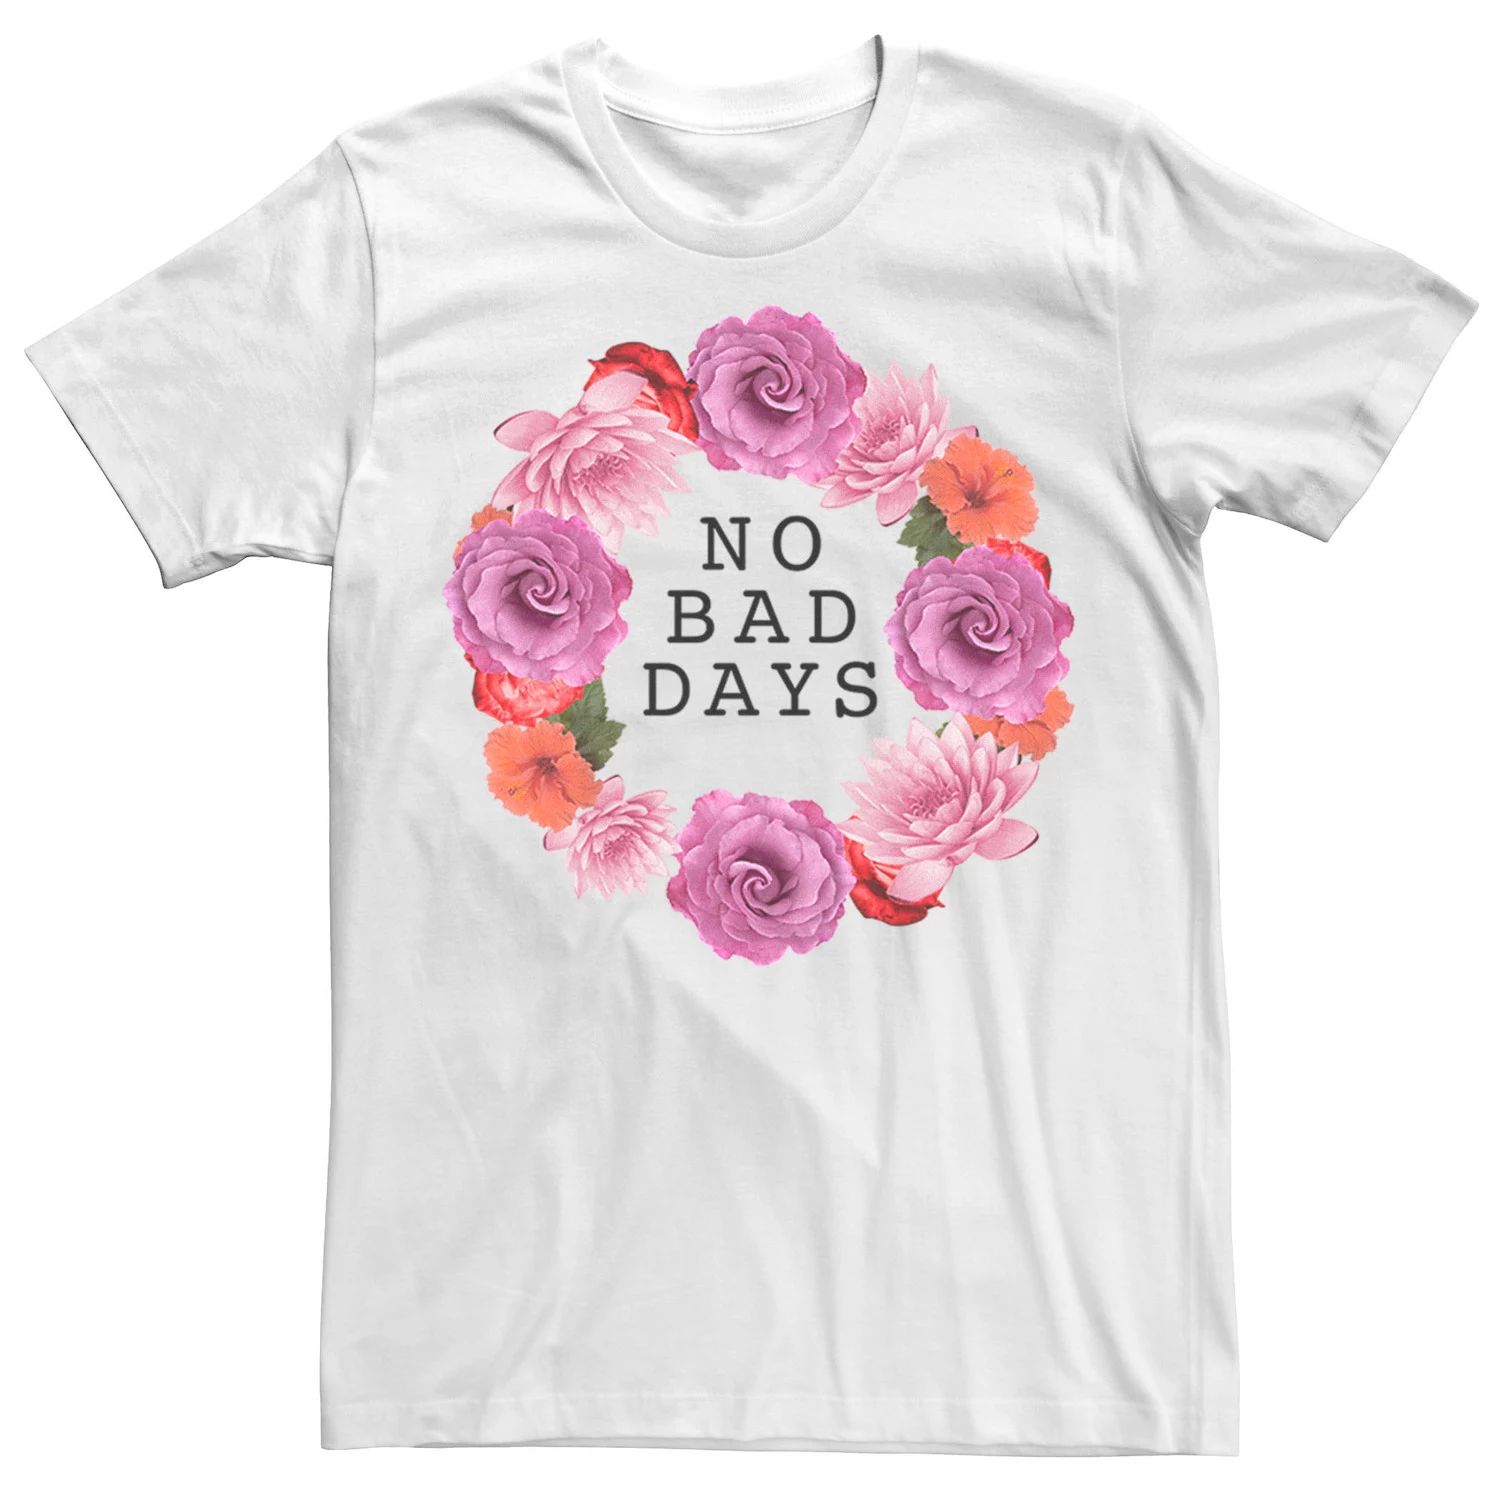 Мужская футболка No Bad Days с цветочным венком Licensed Character, белый мужская футболка зайка с цветочным венком xl белый